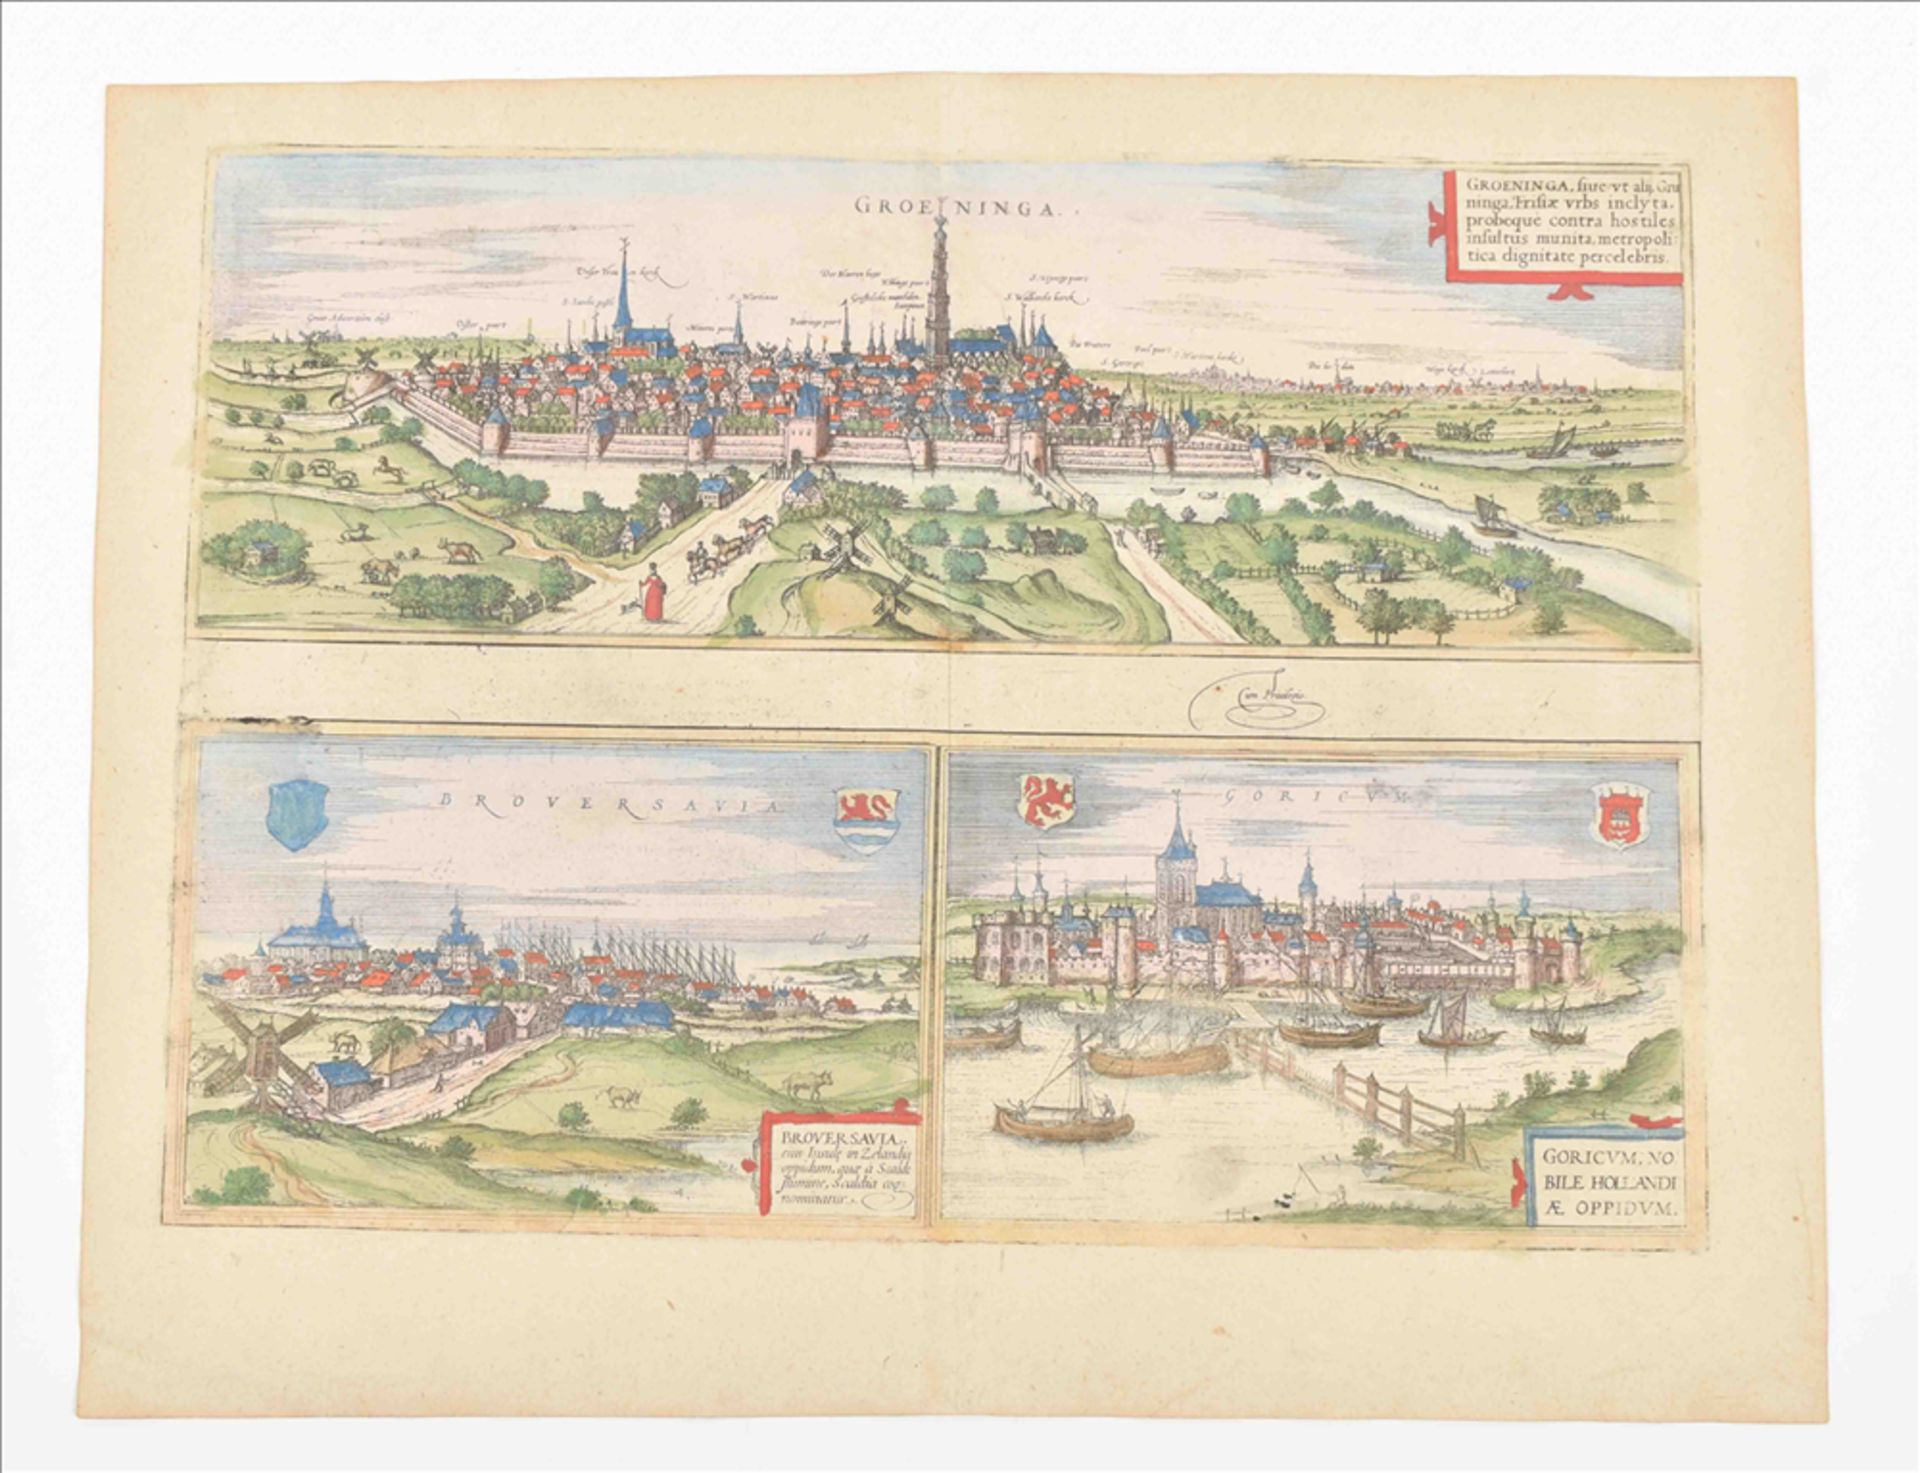 Groningen view from Civitates Orbis Terrarum by Braun & Hogenberg